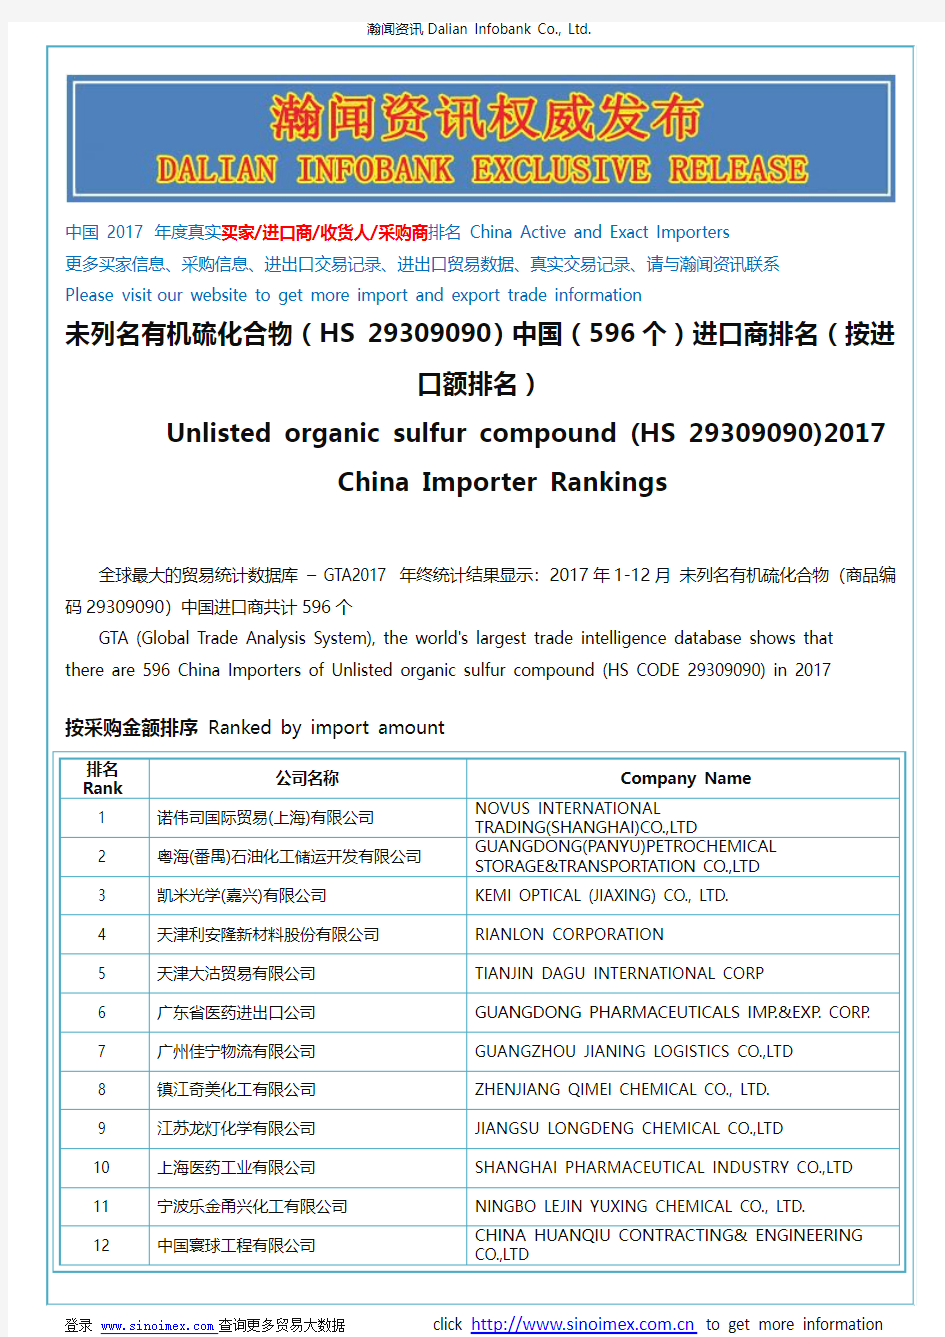 未列名有机硫化合物(HS 29309090)2017 中国(596个)进口商排名(按进口额排名)